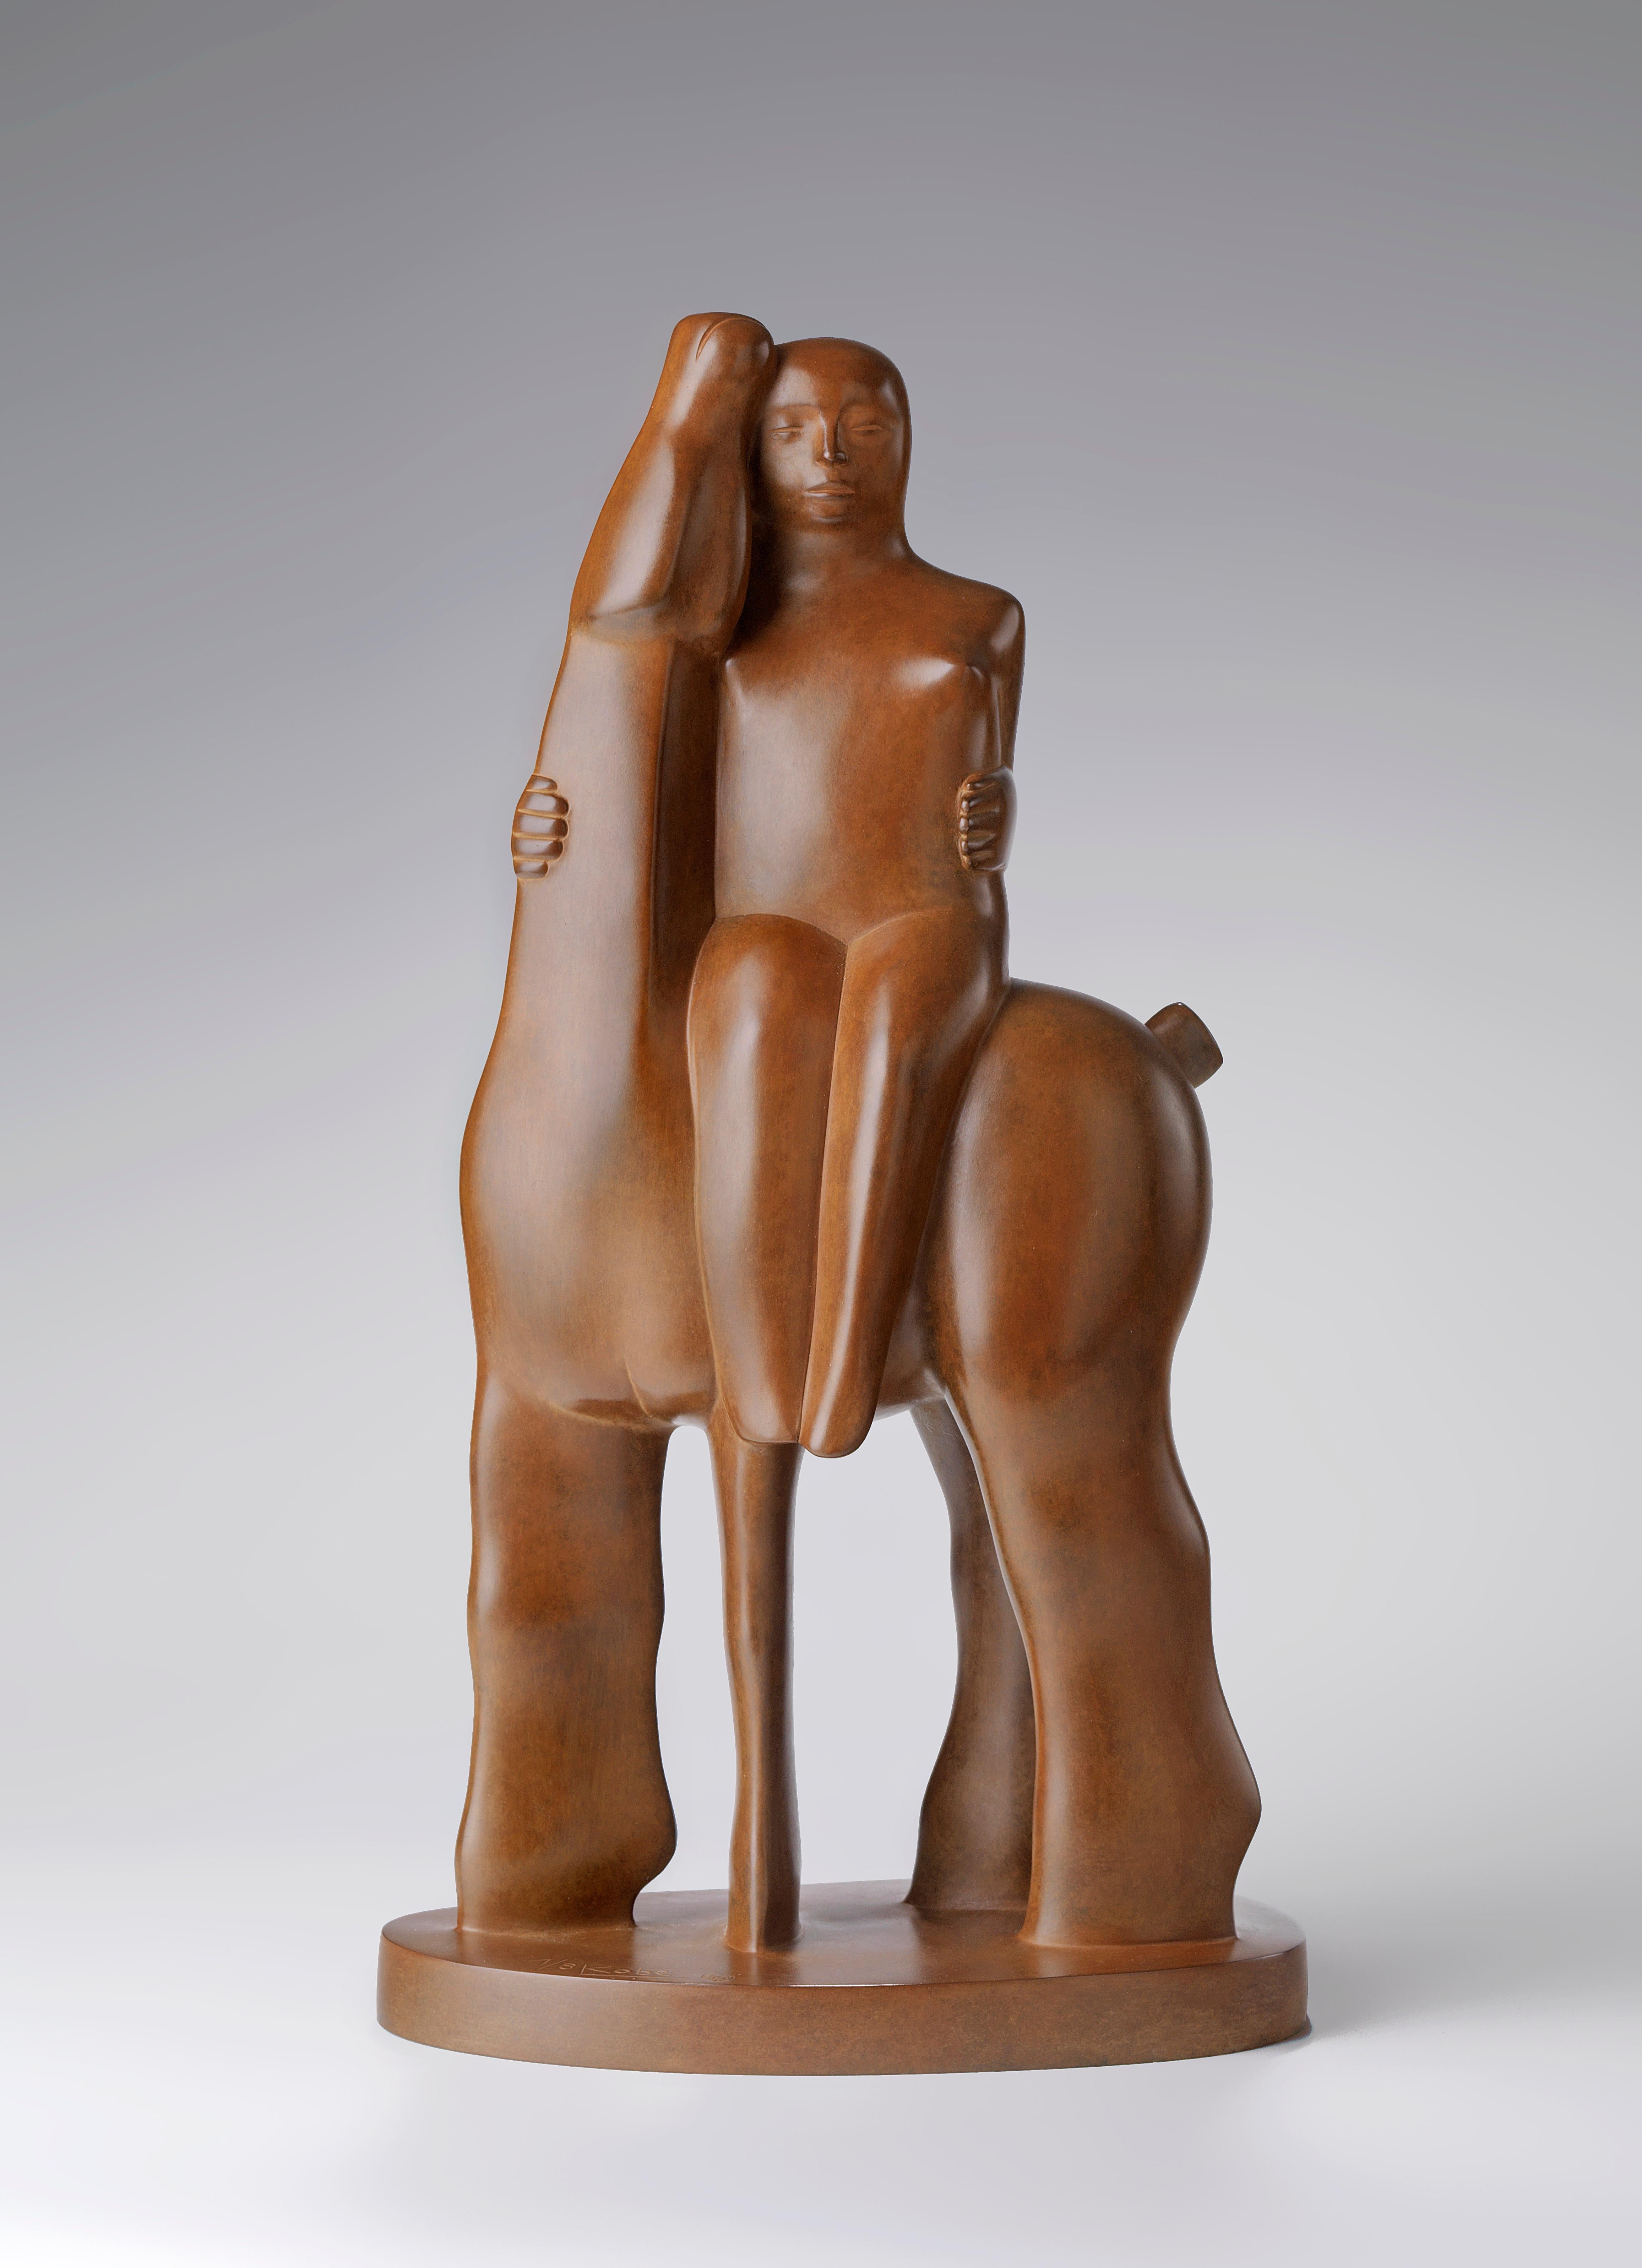 KOBE Figurative Sculpture - Voor Eeuwig Vriendjes Bronze Sculpture Friends Forever Horse Man Friendship